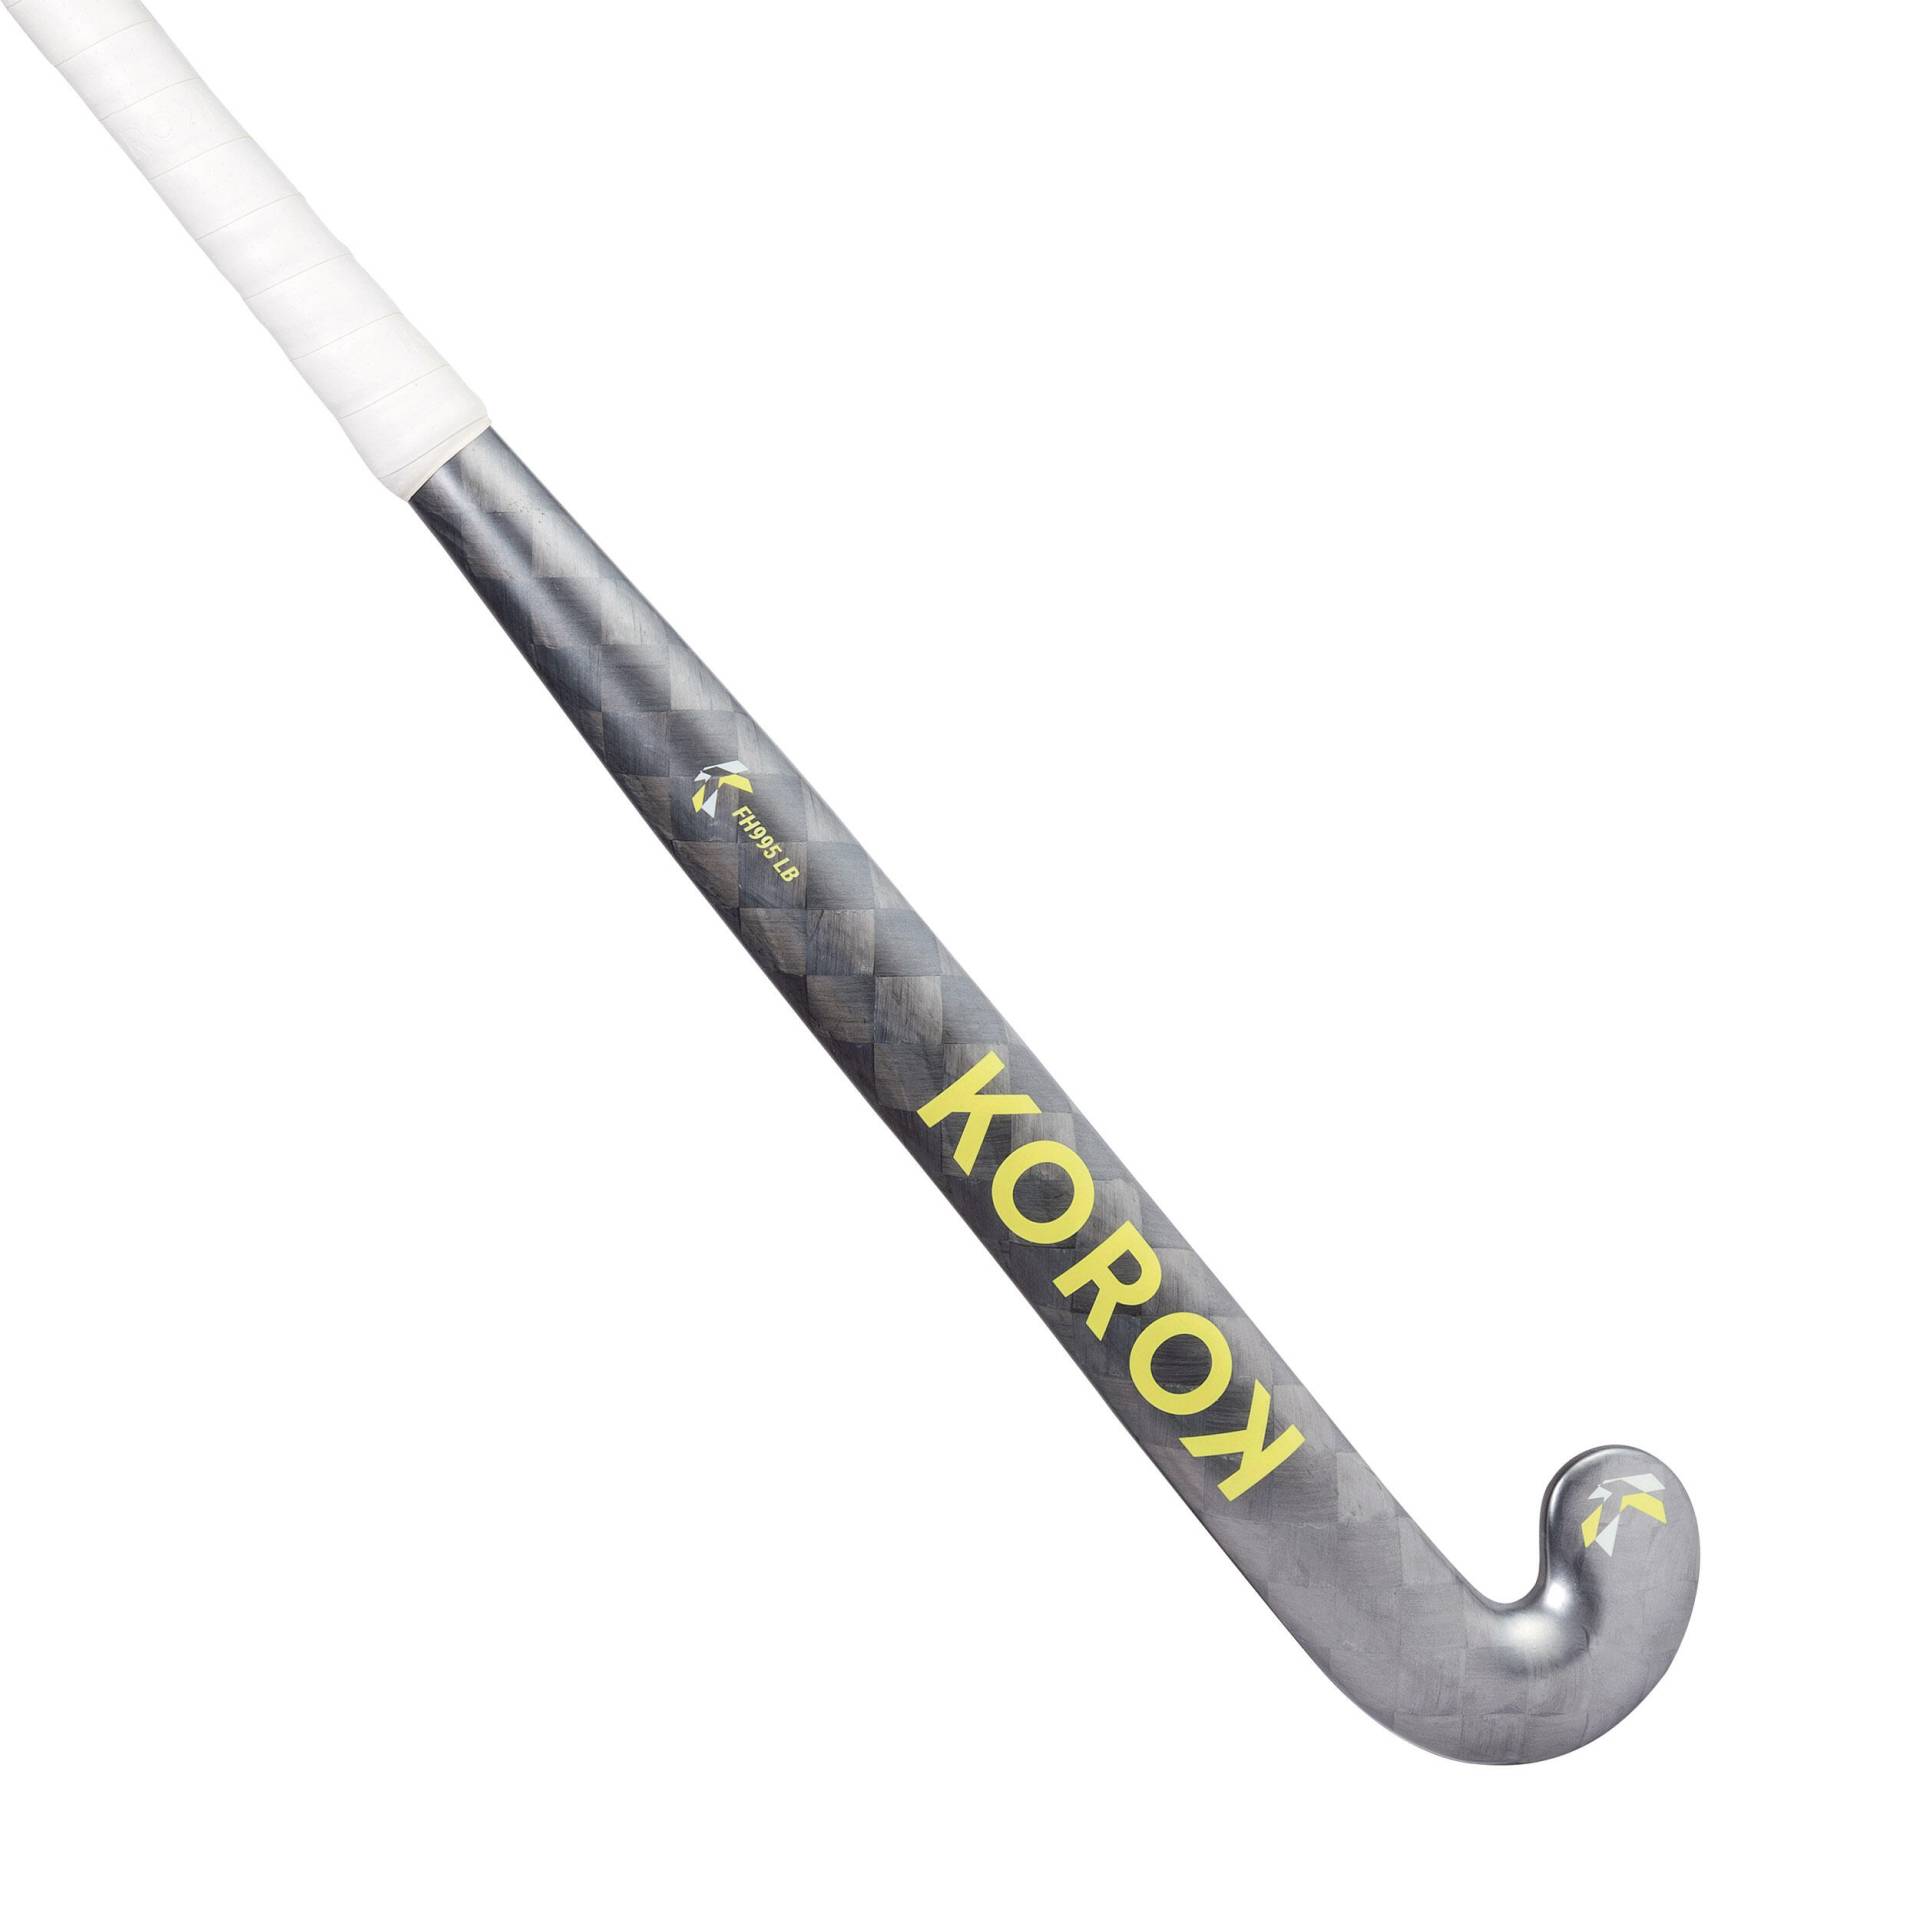 Feldhockeyschläger Erwachsene Experten Low Bow 95 % Carbon - FH995 grau/gelb von KOROK